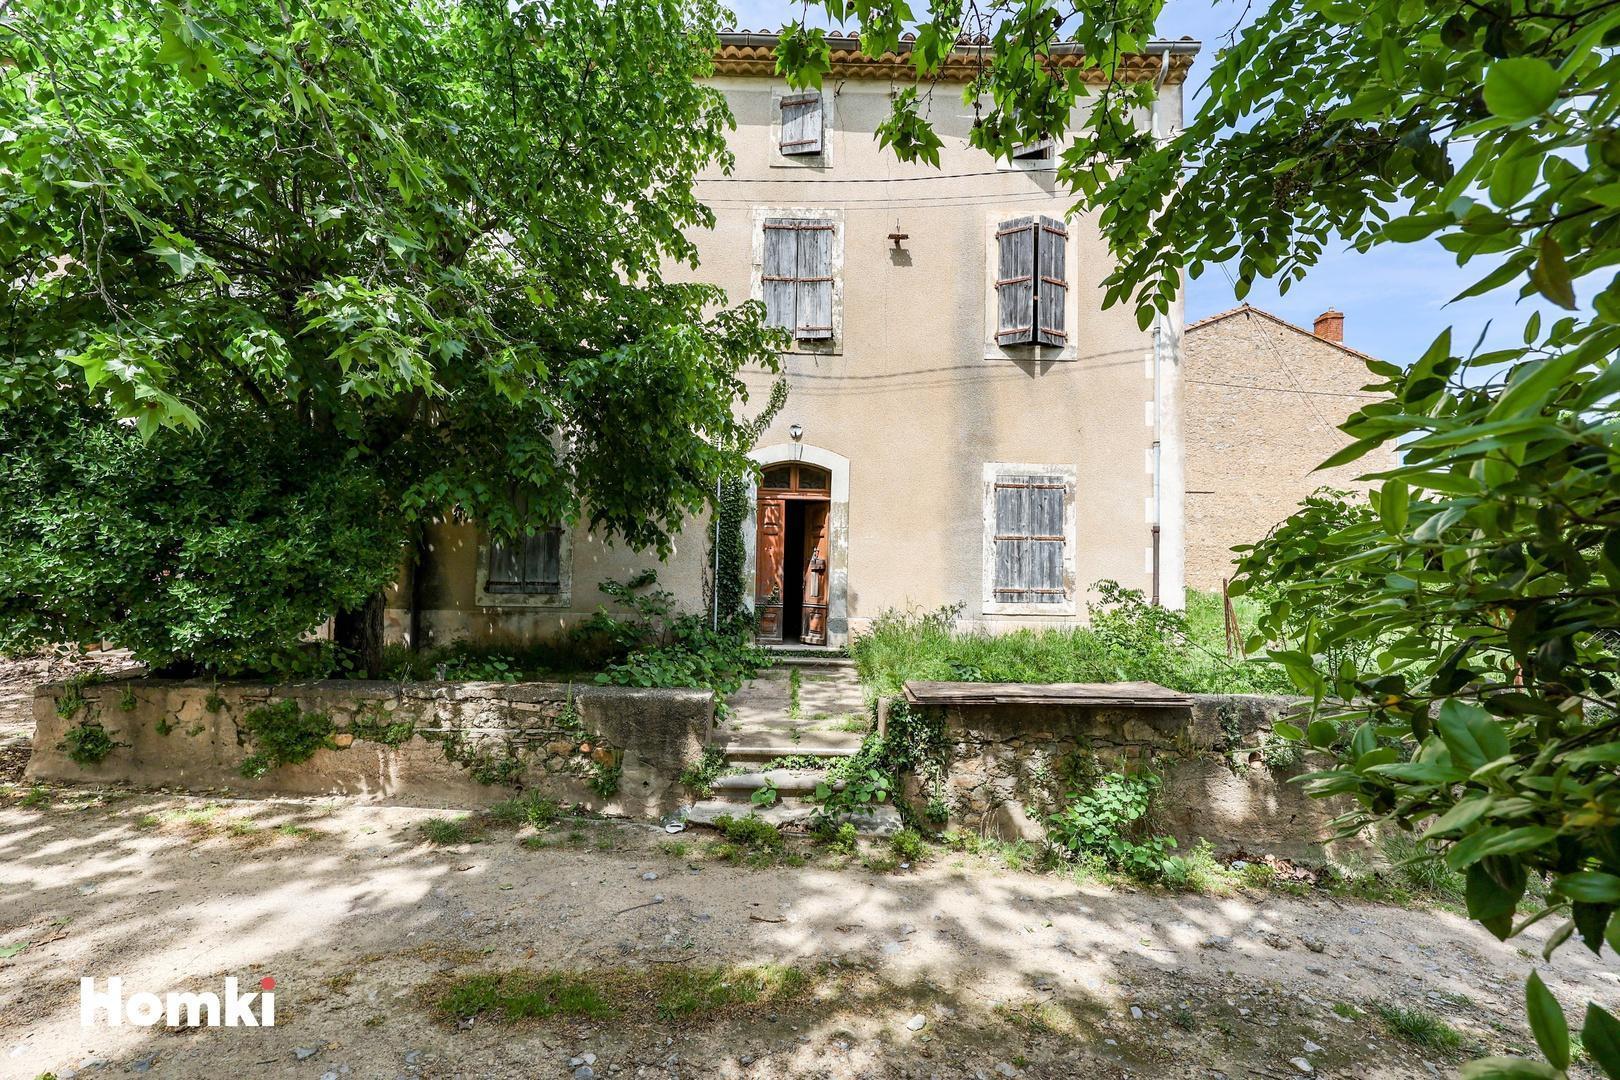 Homki - Vente Maison/villa  de 870.0 m² à Ornaisons 11200